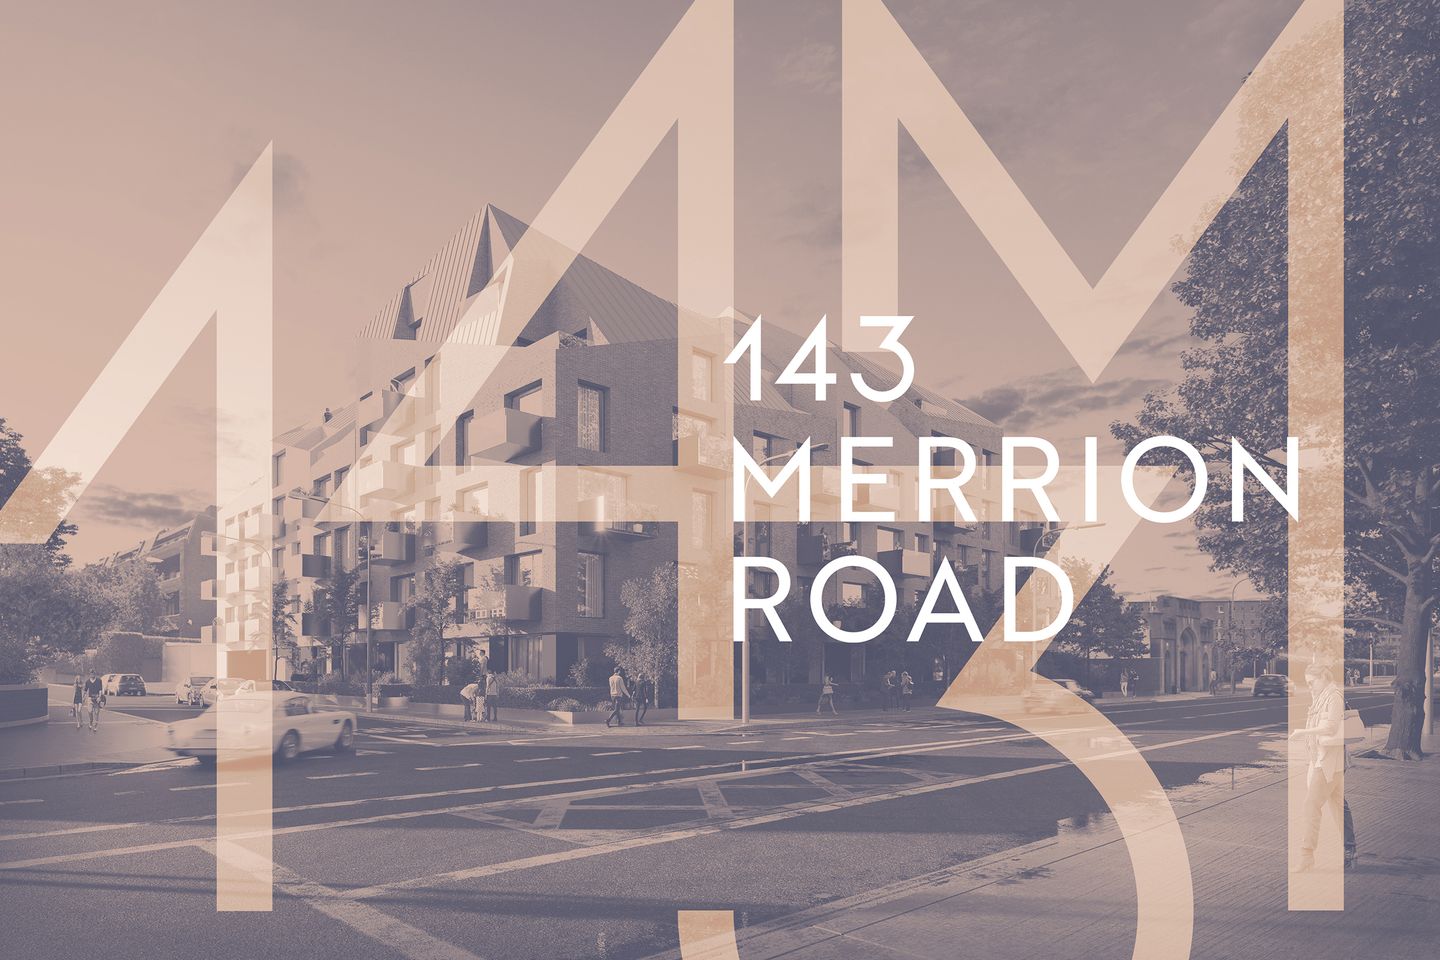 1 Bedroom Apartments, 143 Merrion Road, Ballsbridge, 143 Merrion Road, Ballsbridge, Dublin 4